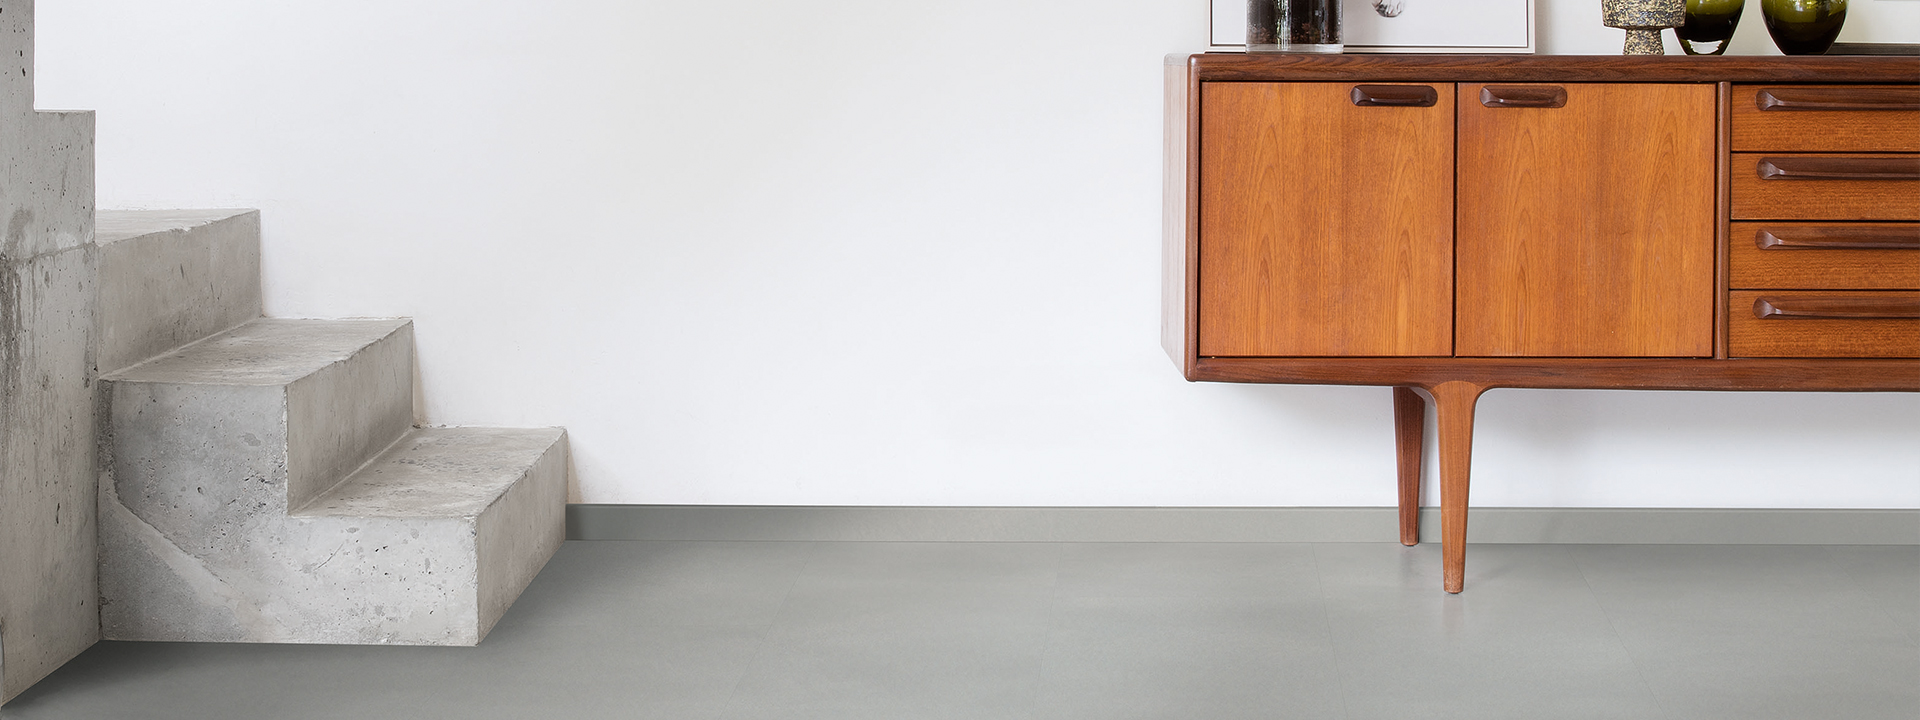 Verenigen smal Eenvoud De strakke look van beton, de voordelen van laminaat en vinyl